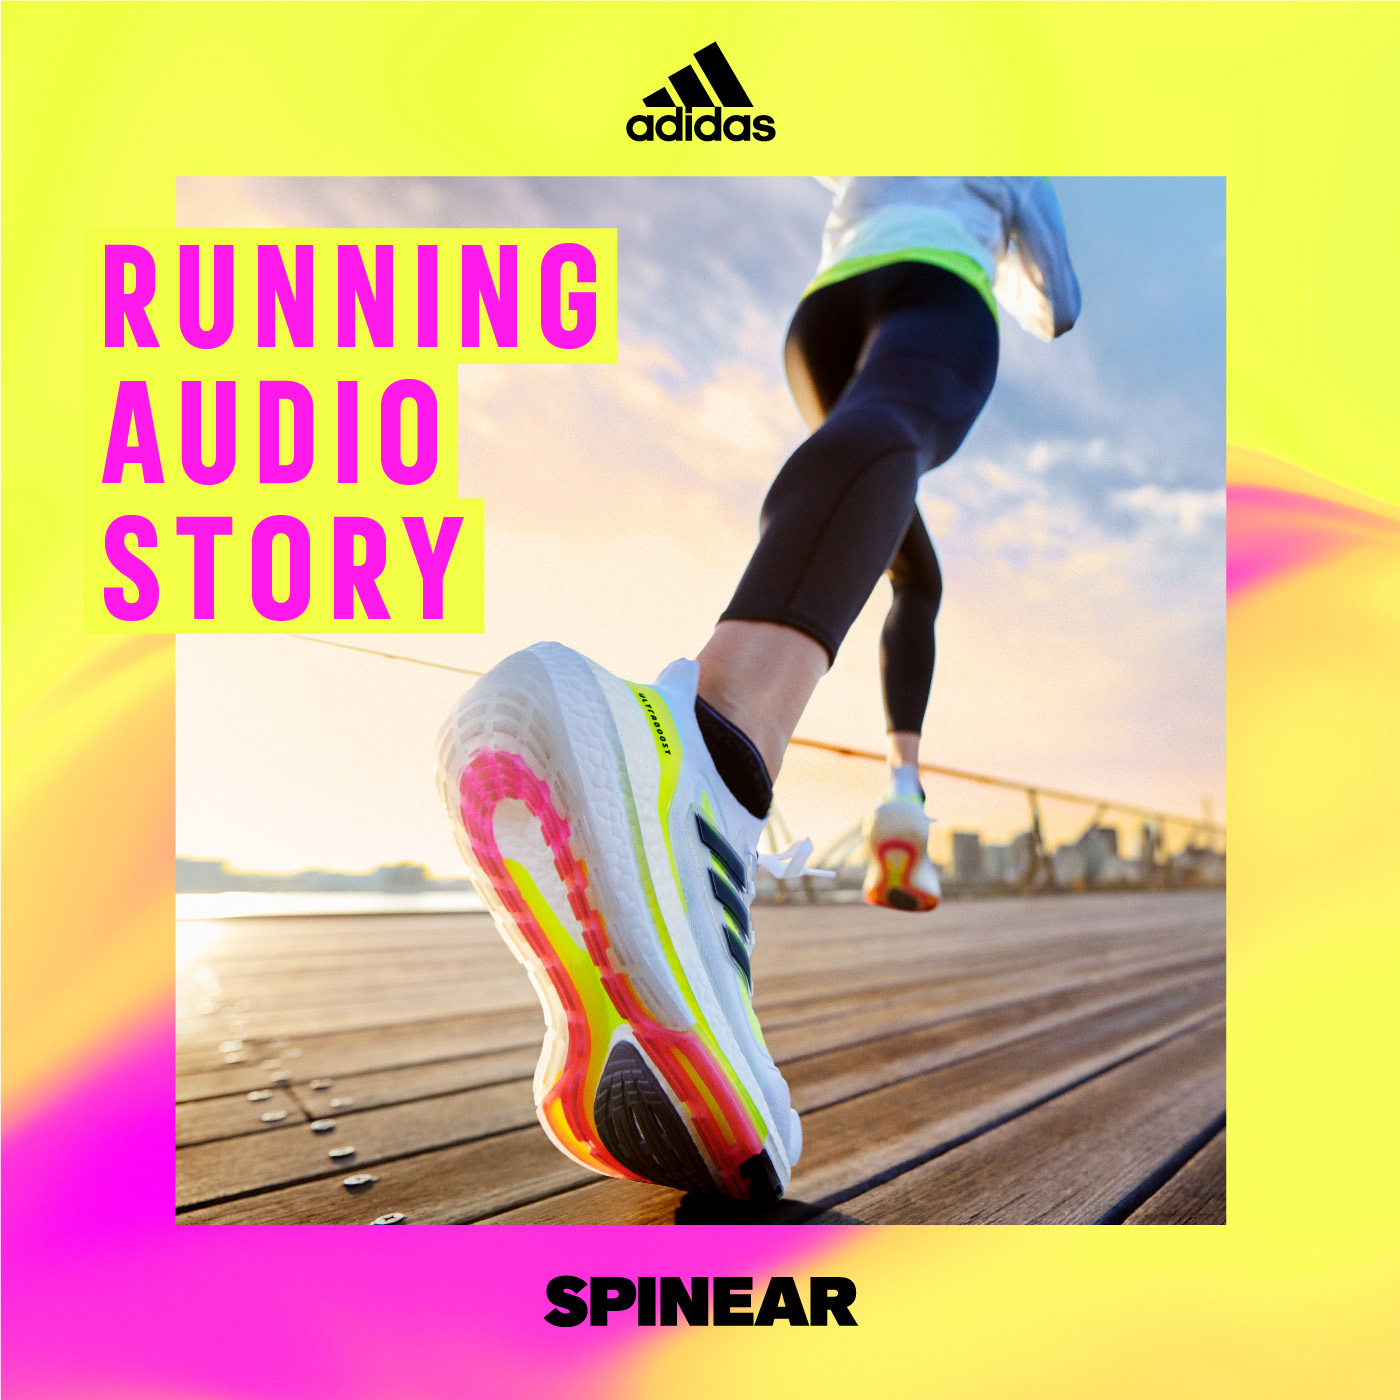 ランニングとアイス/海猫沢めろん - RUNNING AUDIO STORY by adidas Running